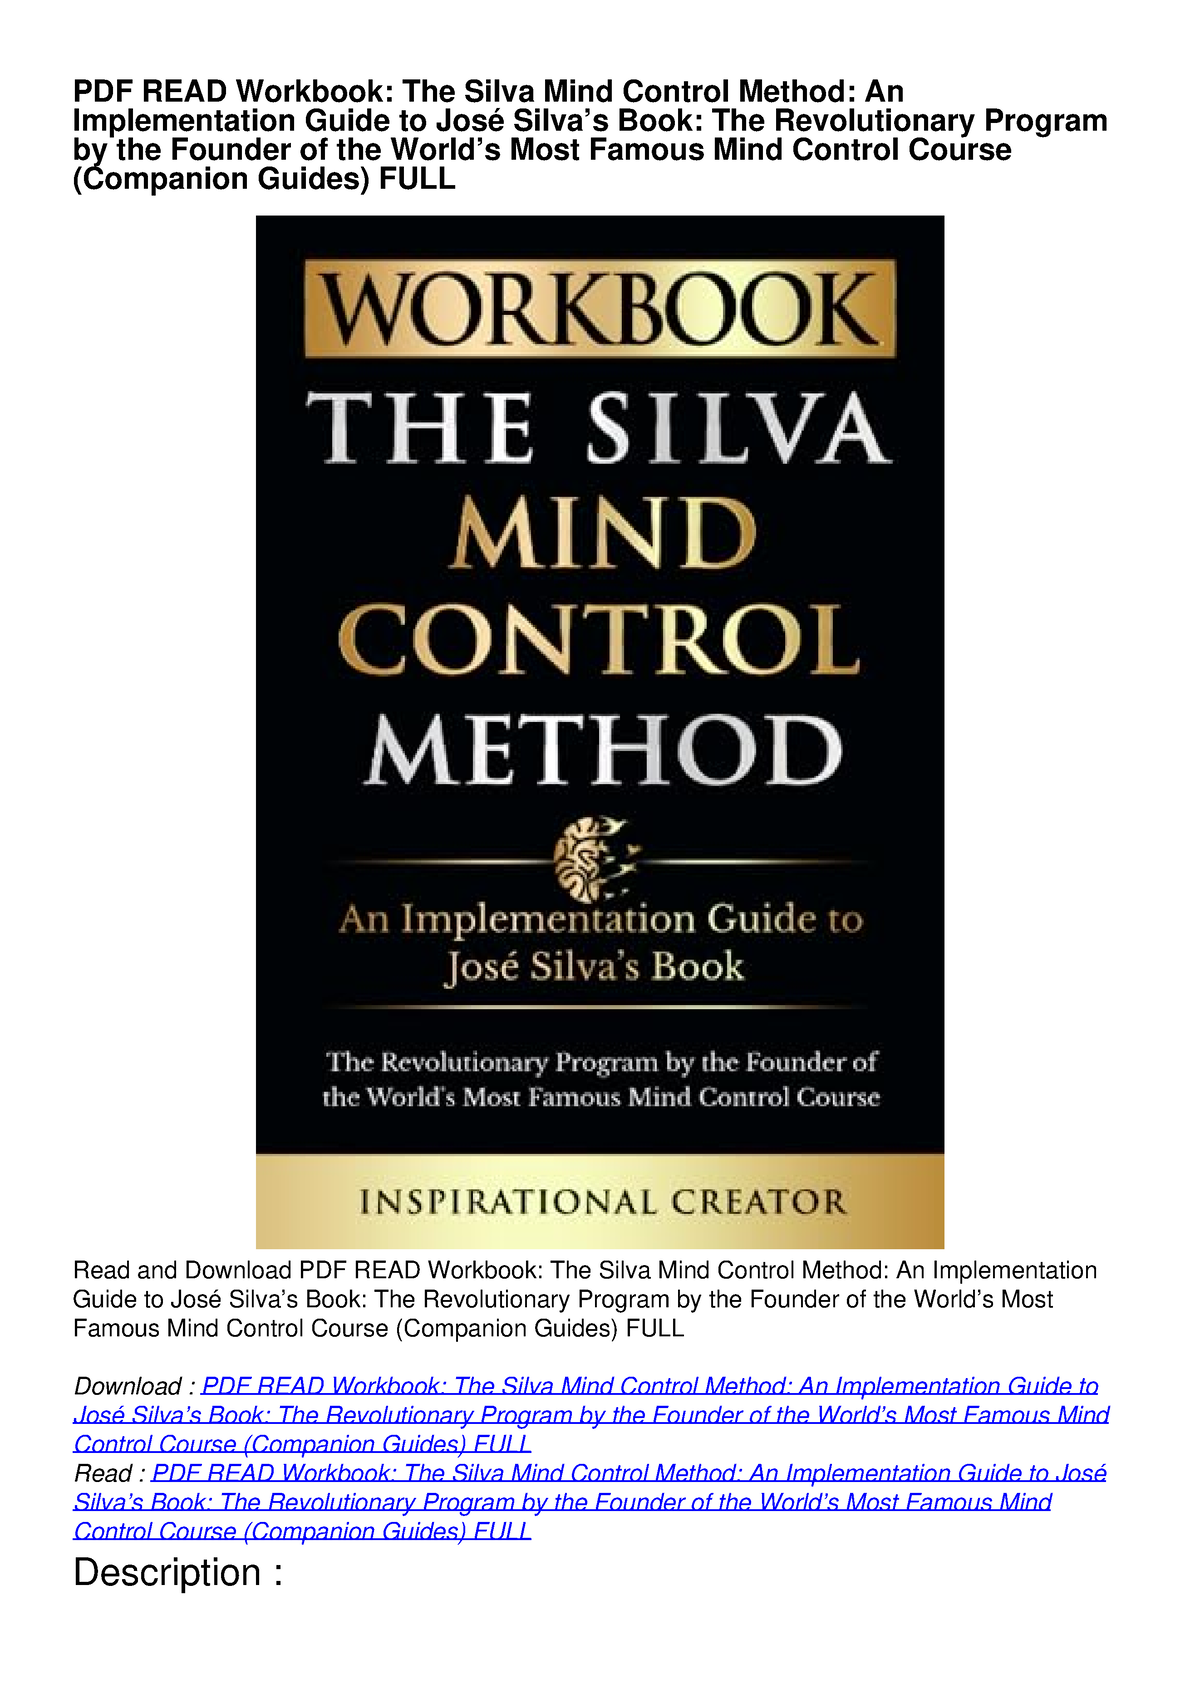 Silva mind control pdf